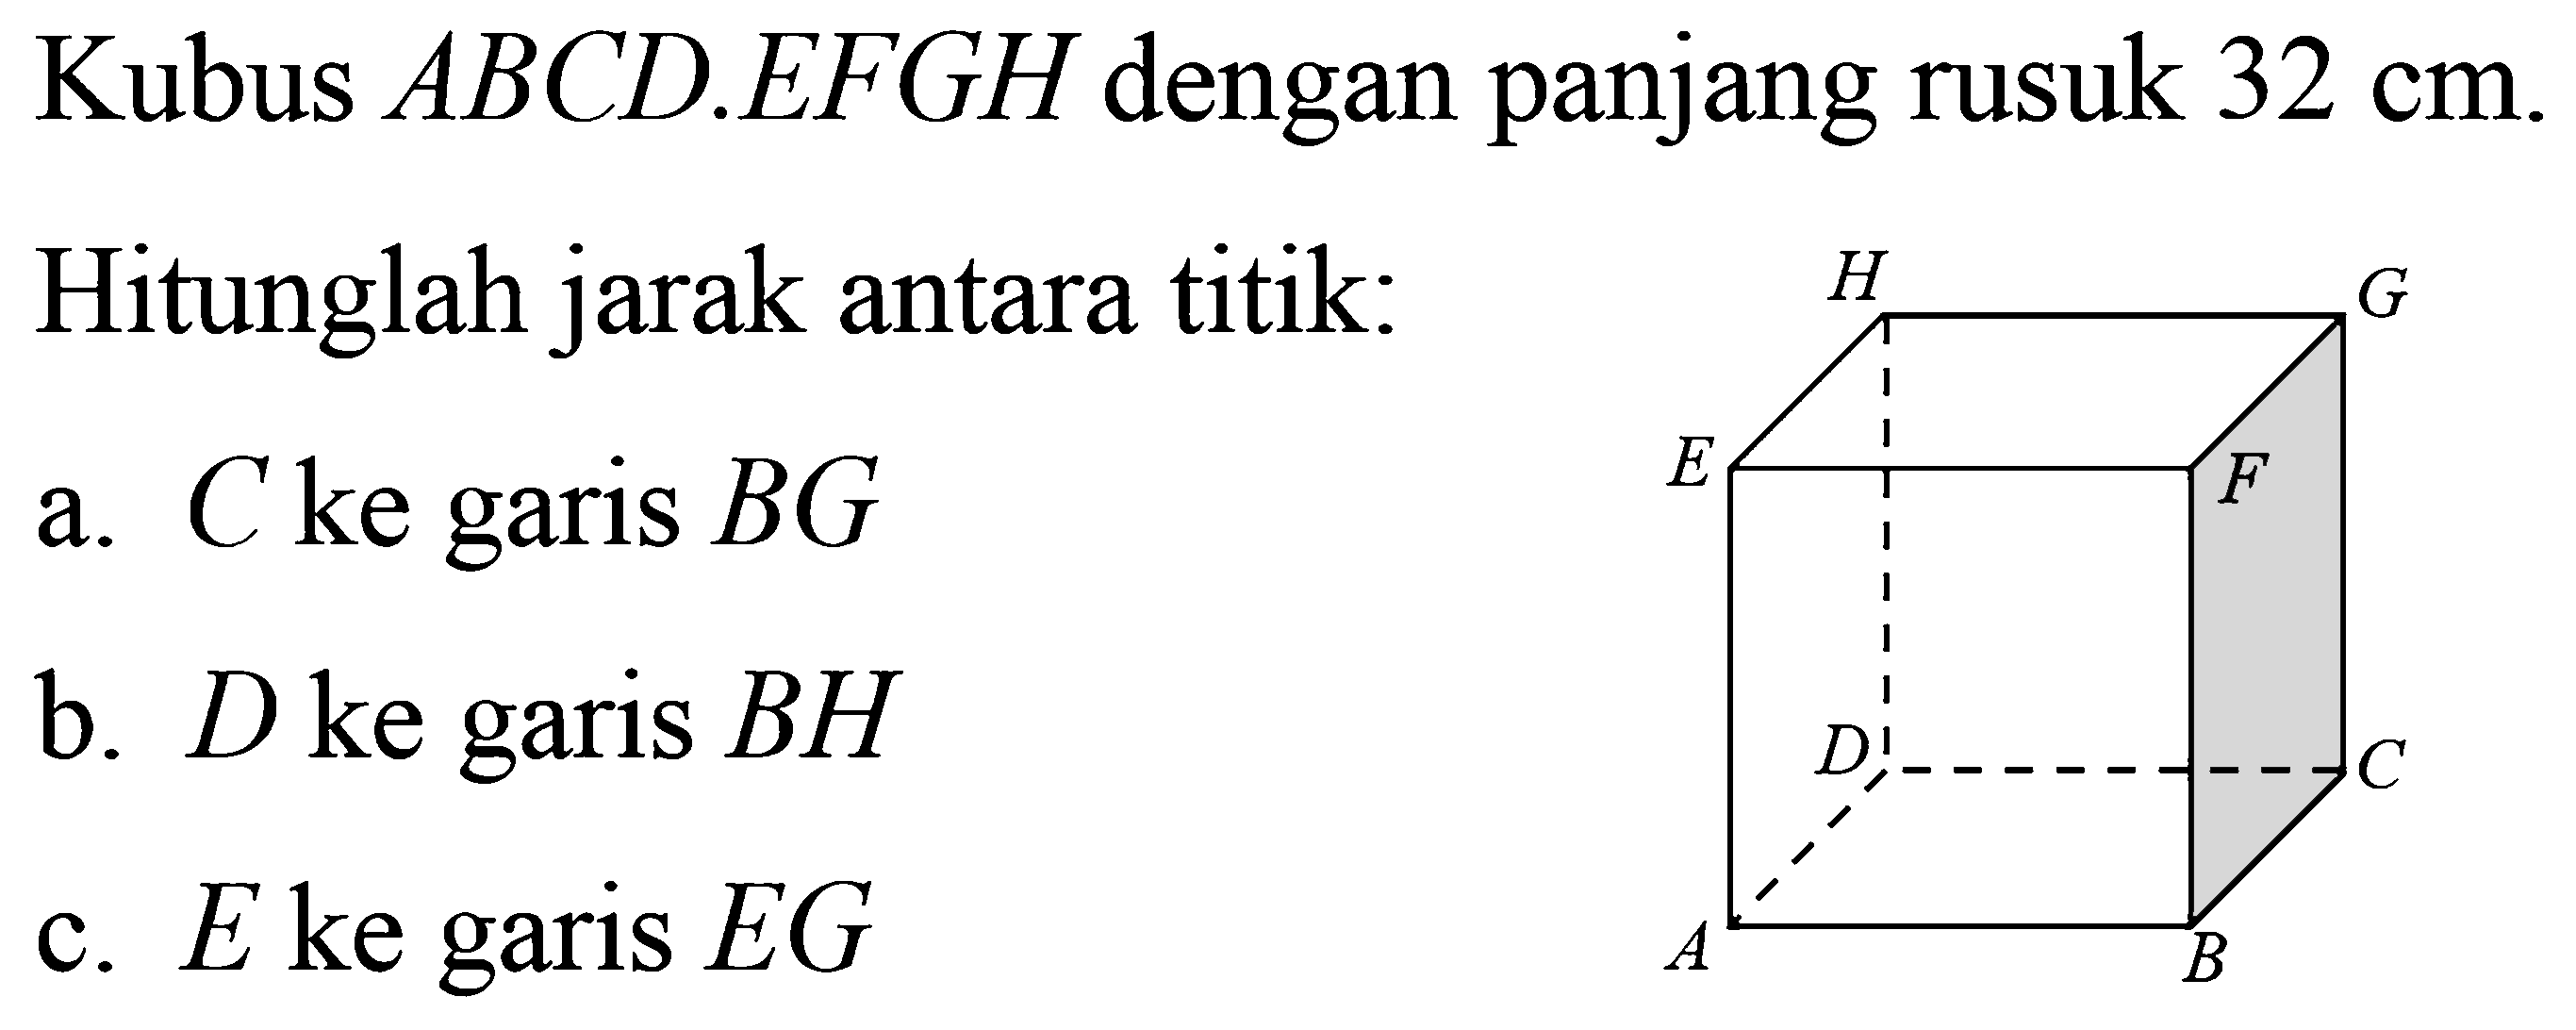 Kubus ABCD.EFGH dengan panjang rusuk 32 cm. Hitunglah jarak antara titik: a. C ke garis BG b. D ke garis BH c. E ke garis EG ABCDEFGH